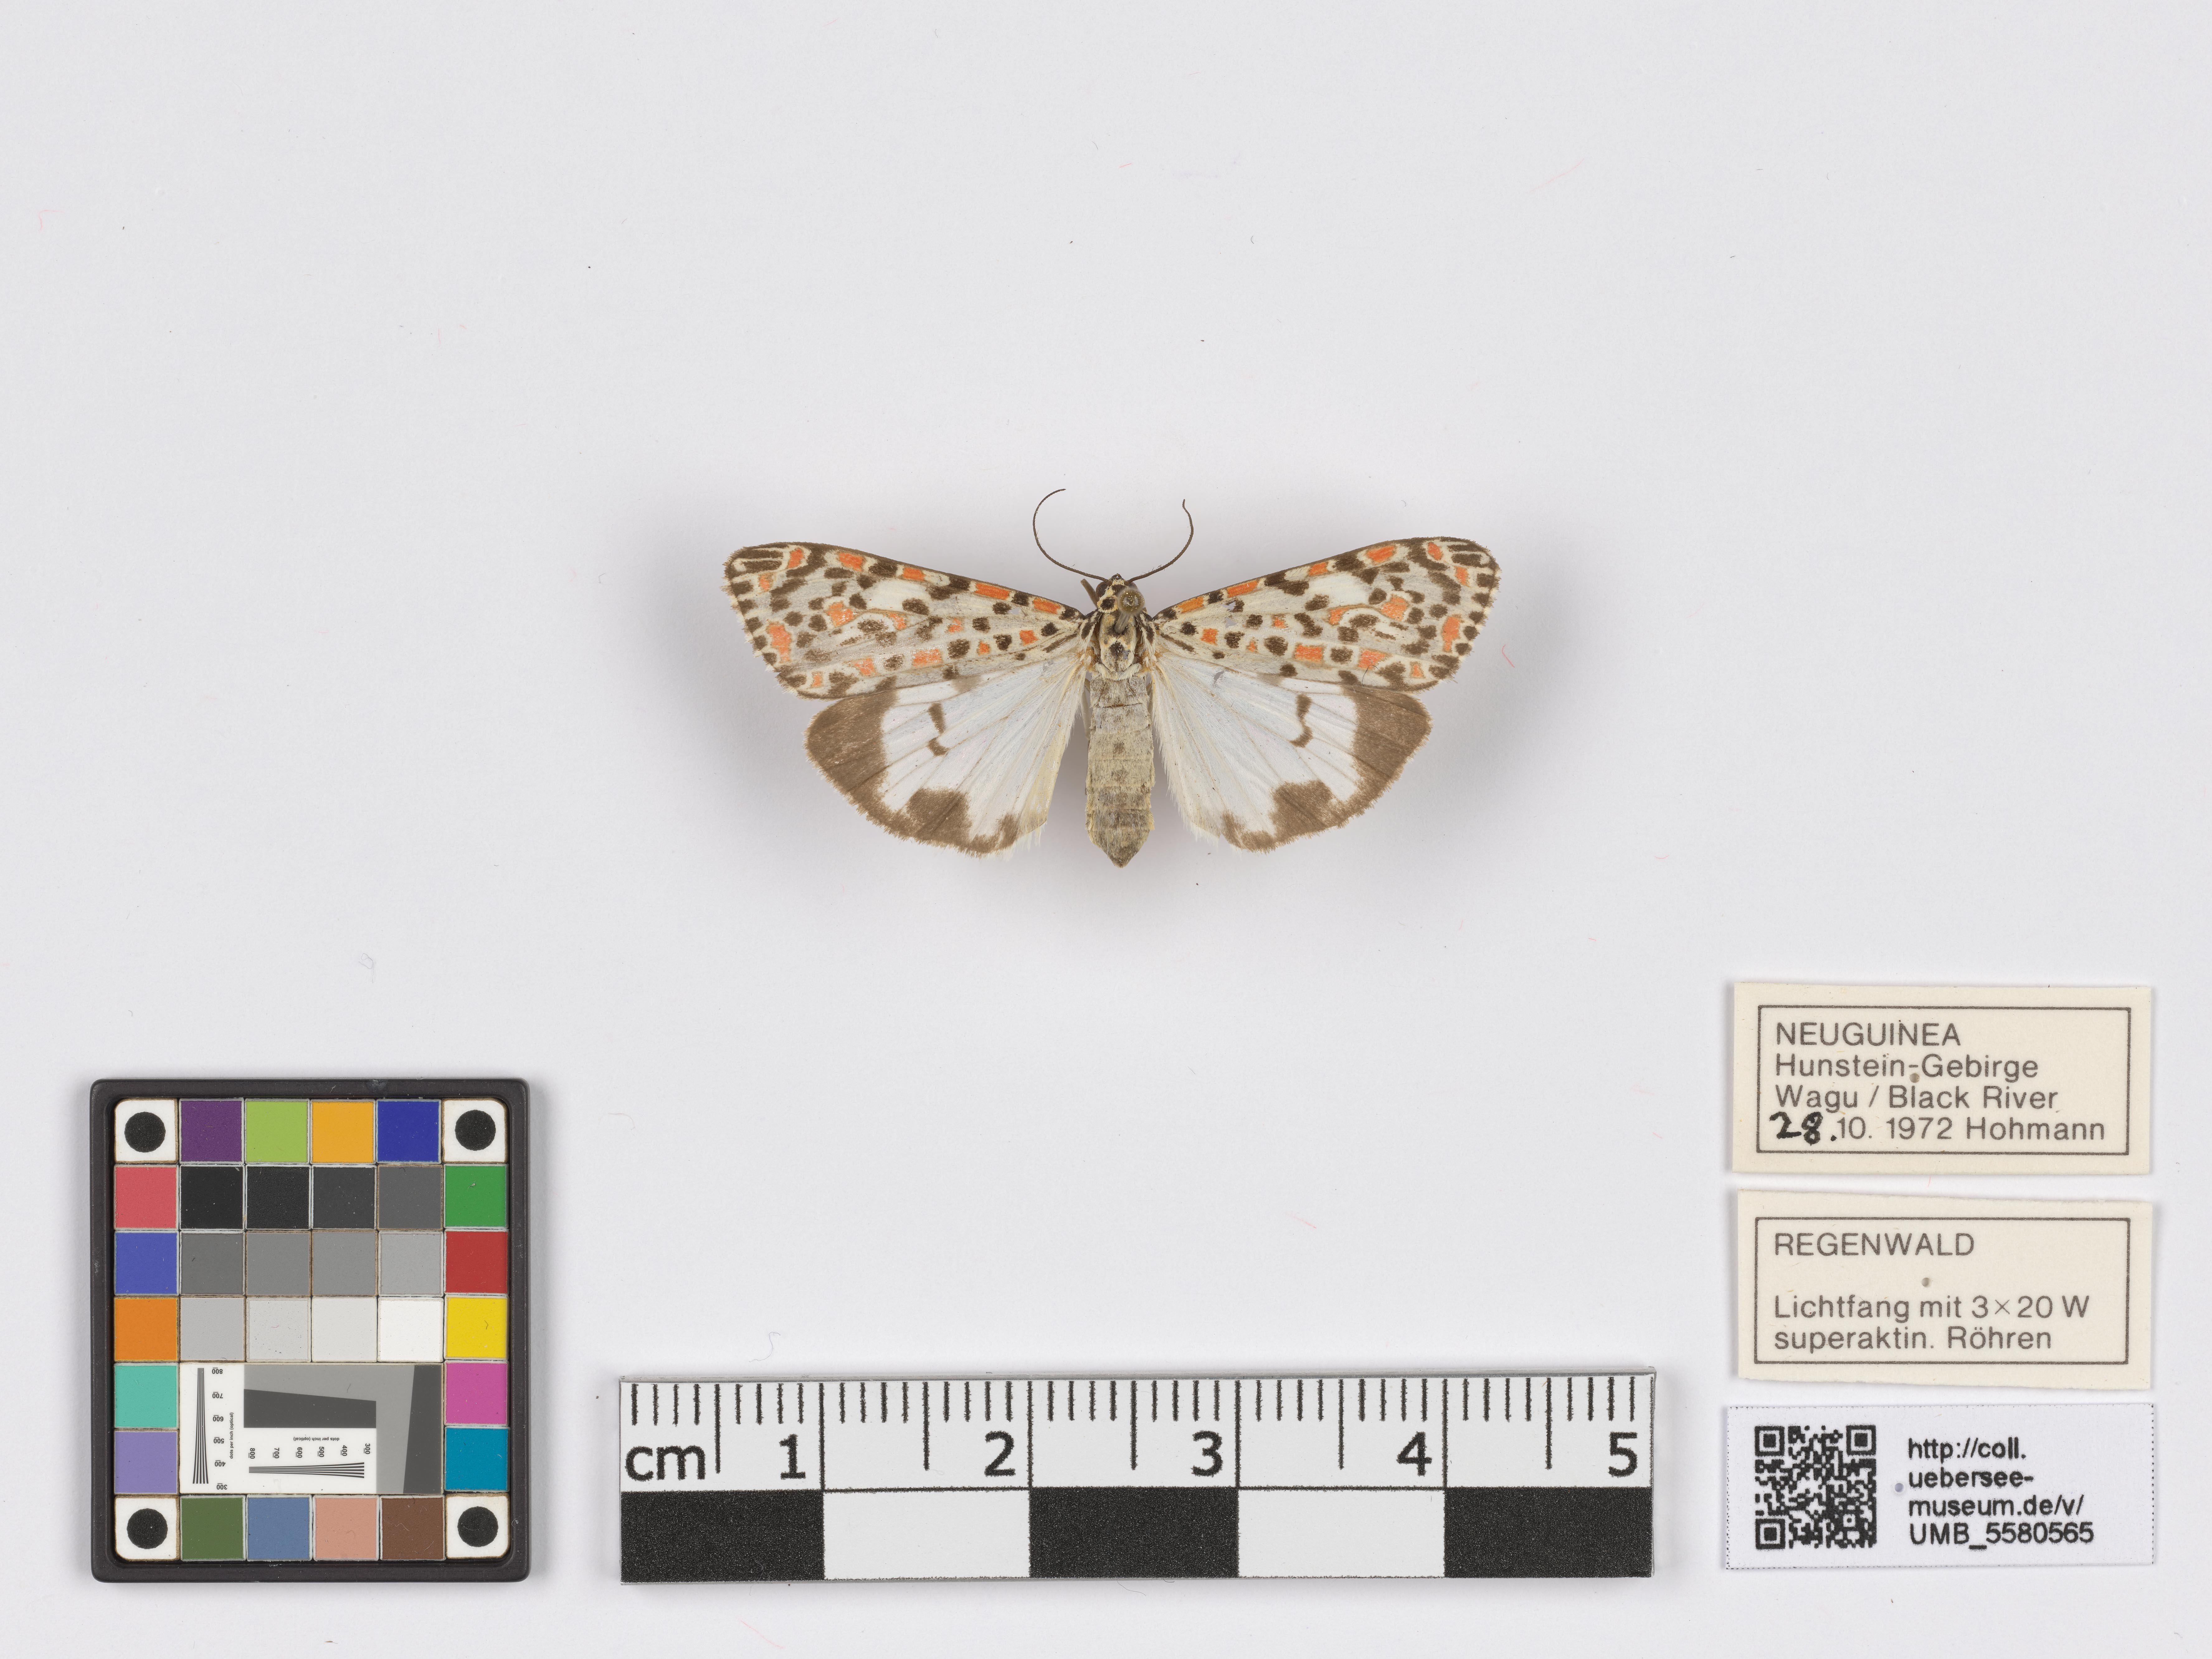 UMB_5580565 | Utetheisa pulchelloides marshallorum | genadeltes Objekt (Übersee-Museum Bremen CC BY-NC-SA)